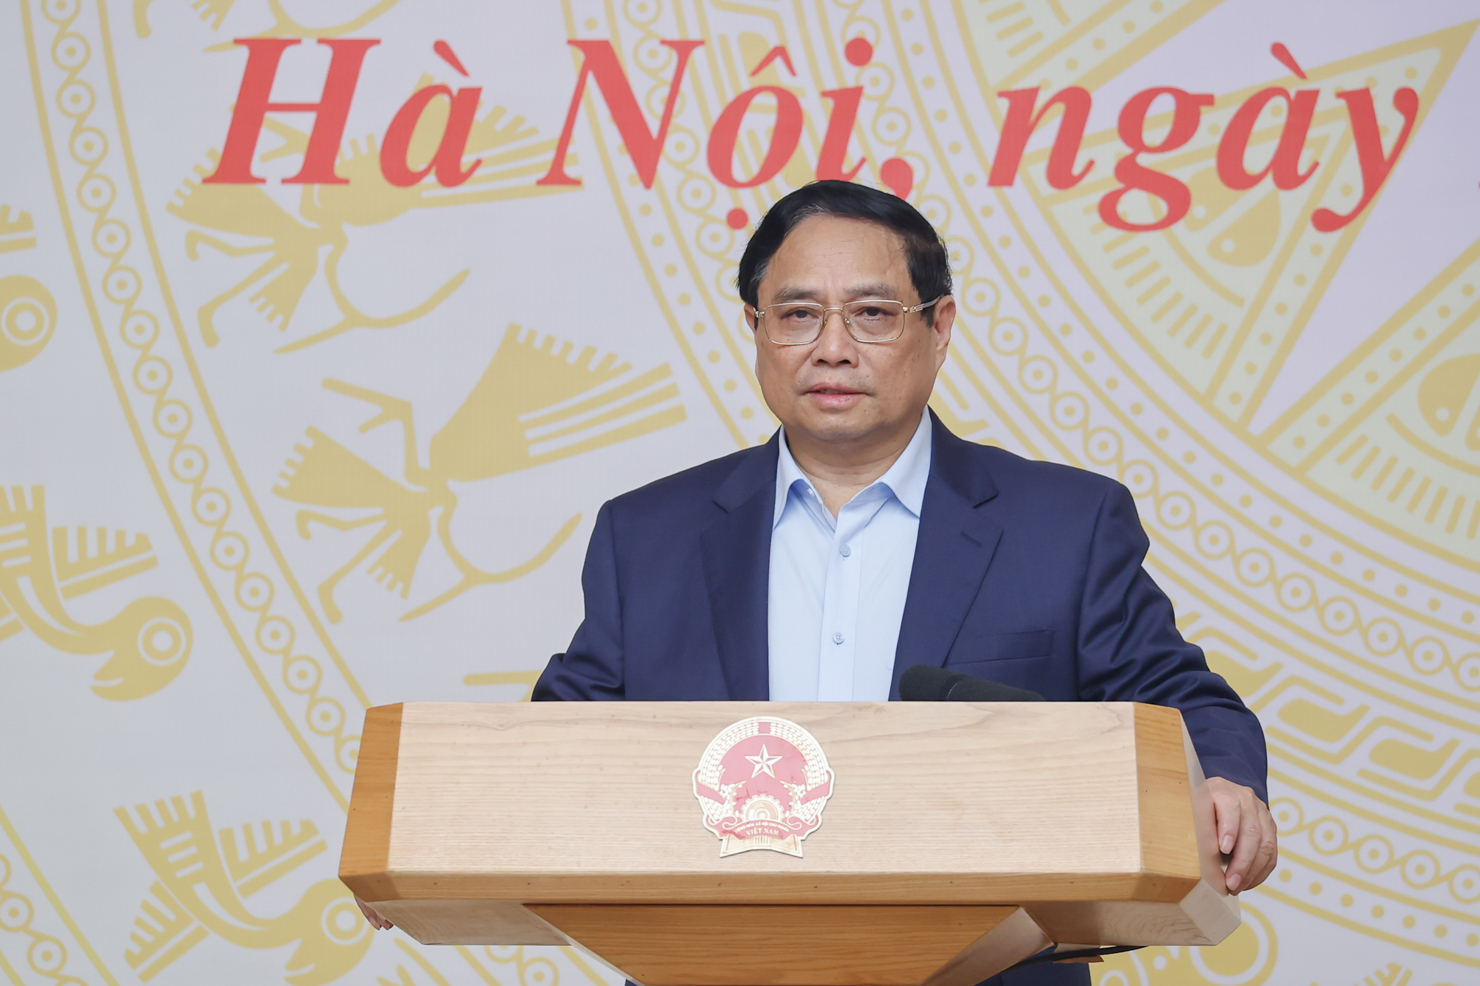 Thủ tướng Chính phủ Phạm Minh Chính: “Chỉ bàn làm, không bàn lùi” trong chuyển đổi số, phát triển thương mại điện tử